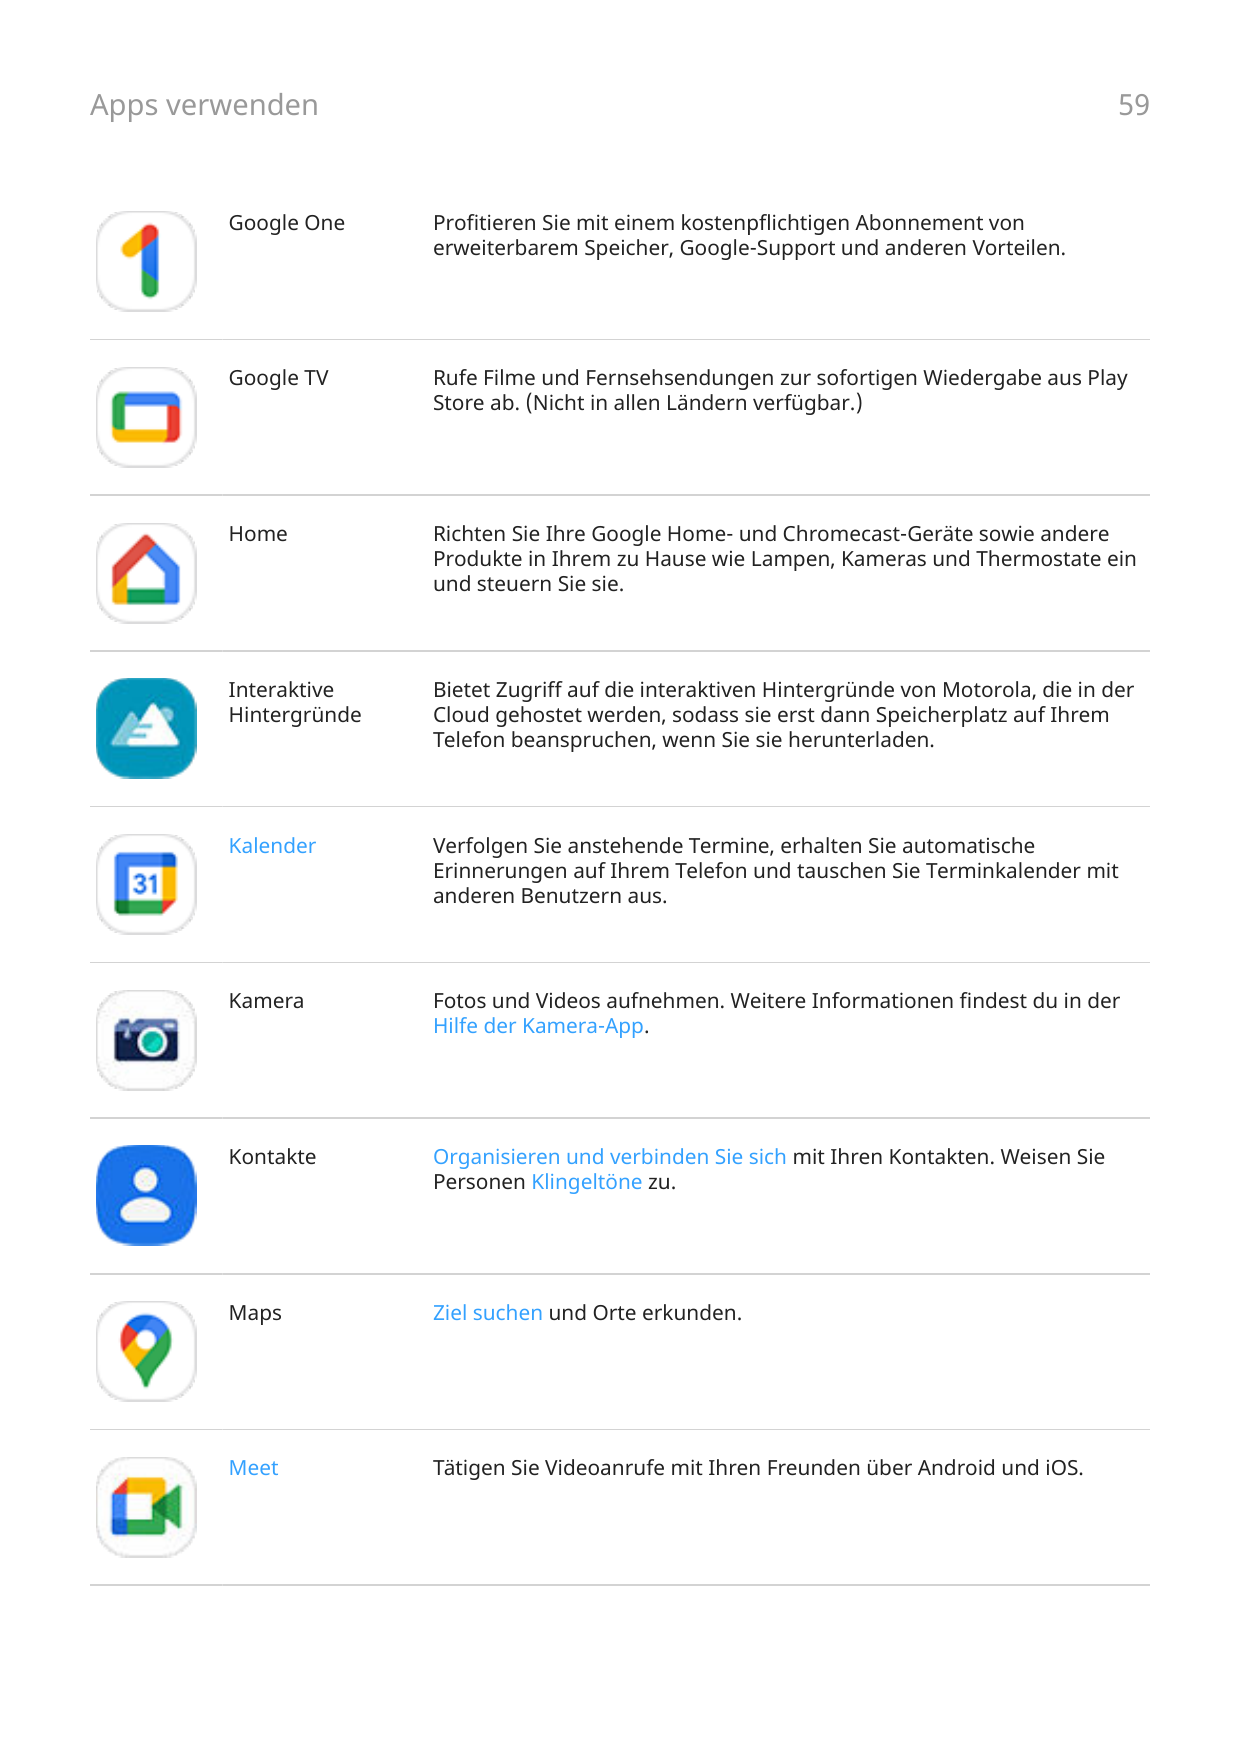 Apps verwenden59Google OneProfitieren Sie mit einem kostenpflichtigen Abonnement vonerweiterbarem Speicher, Google-Support und a